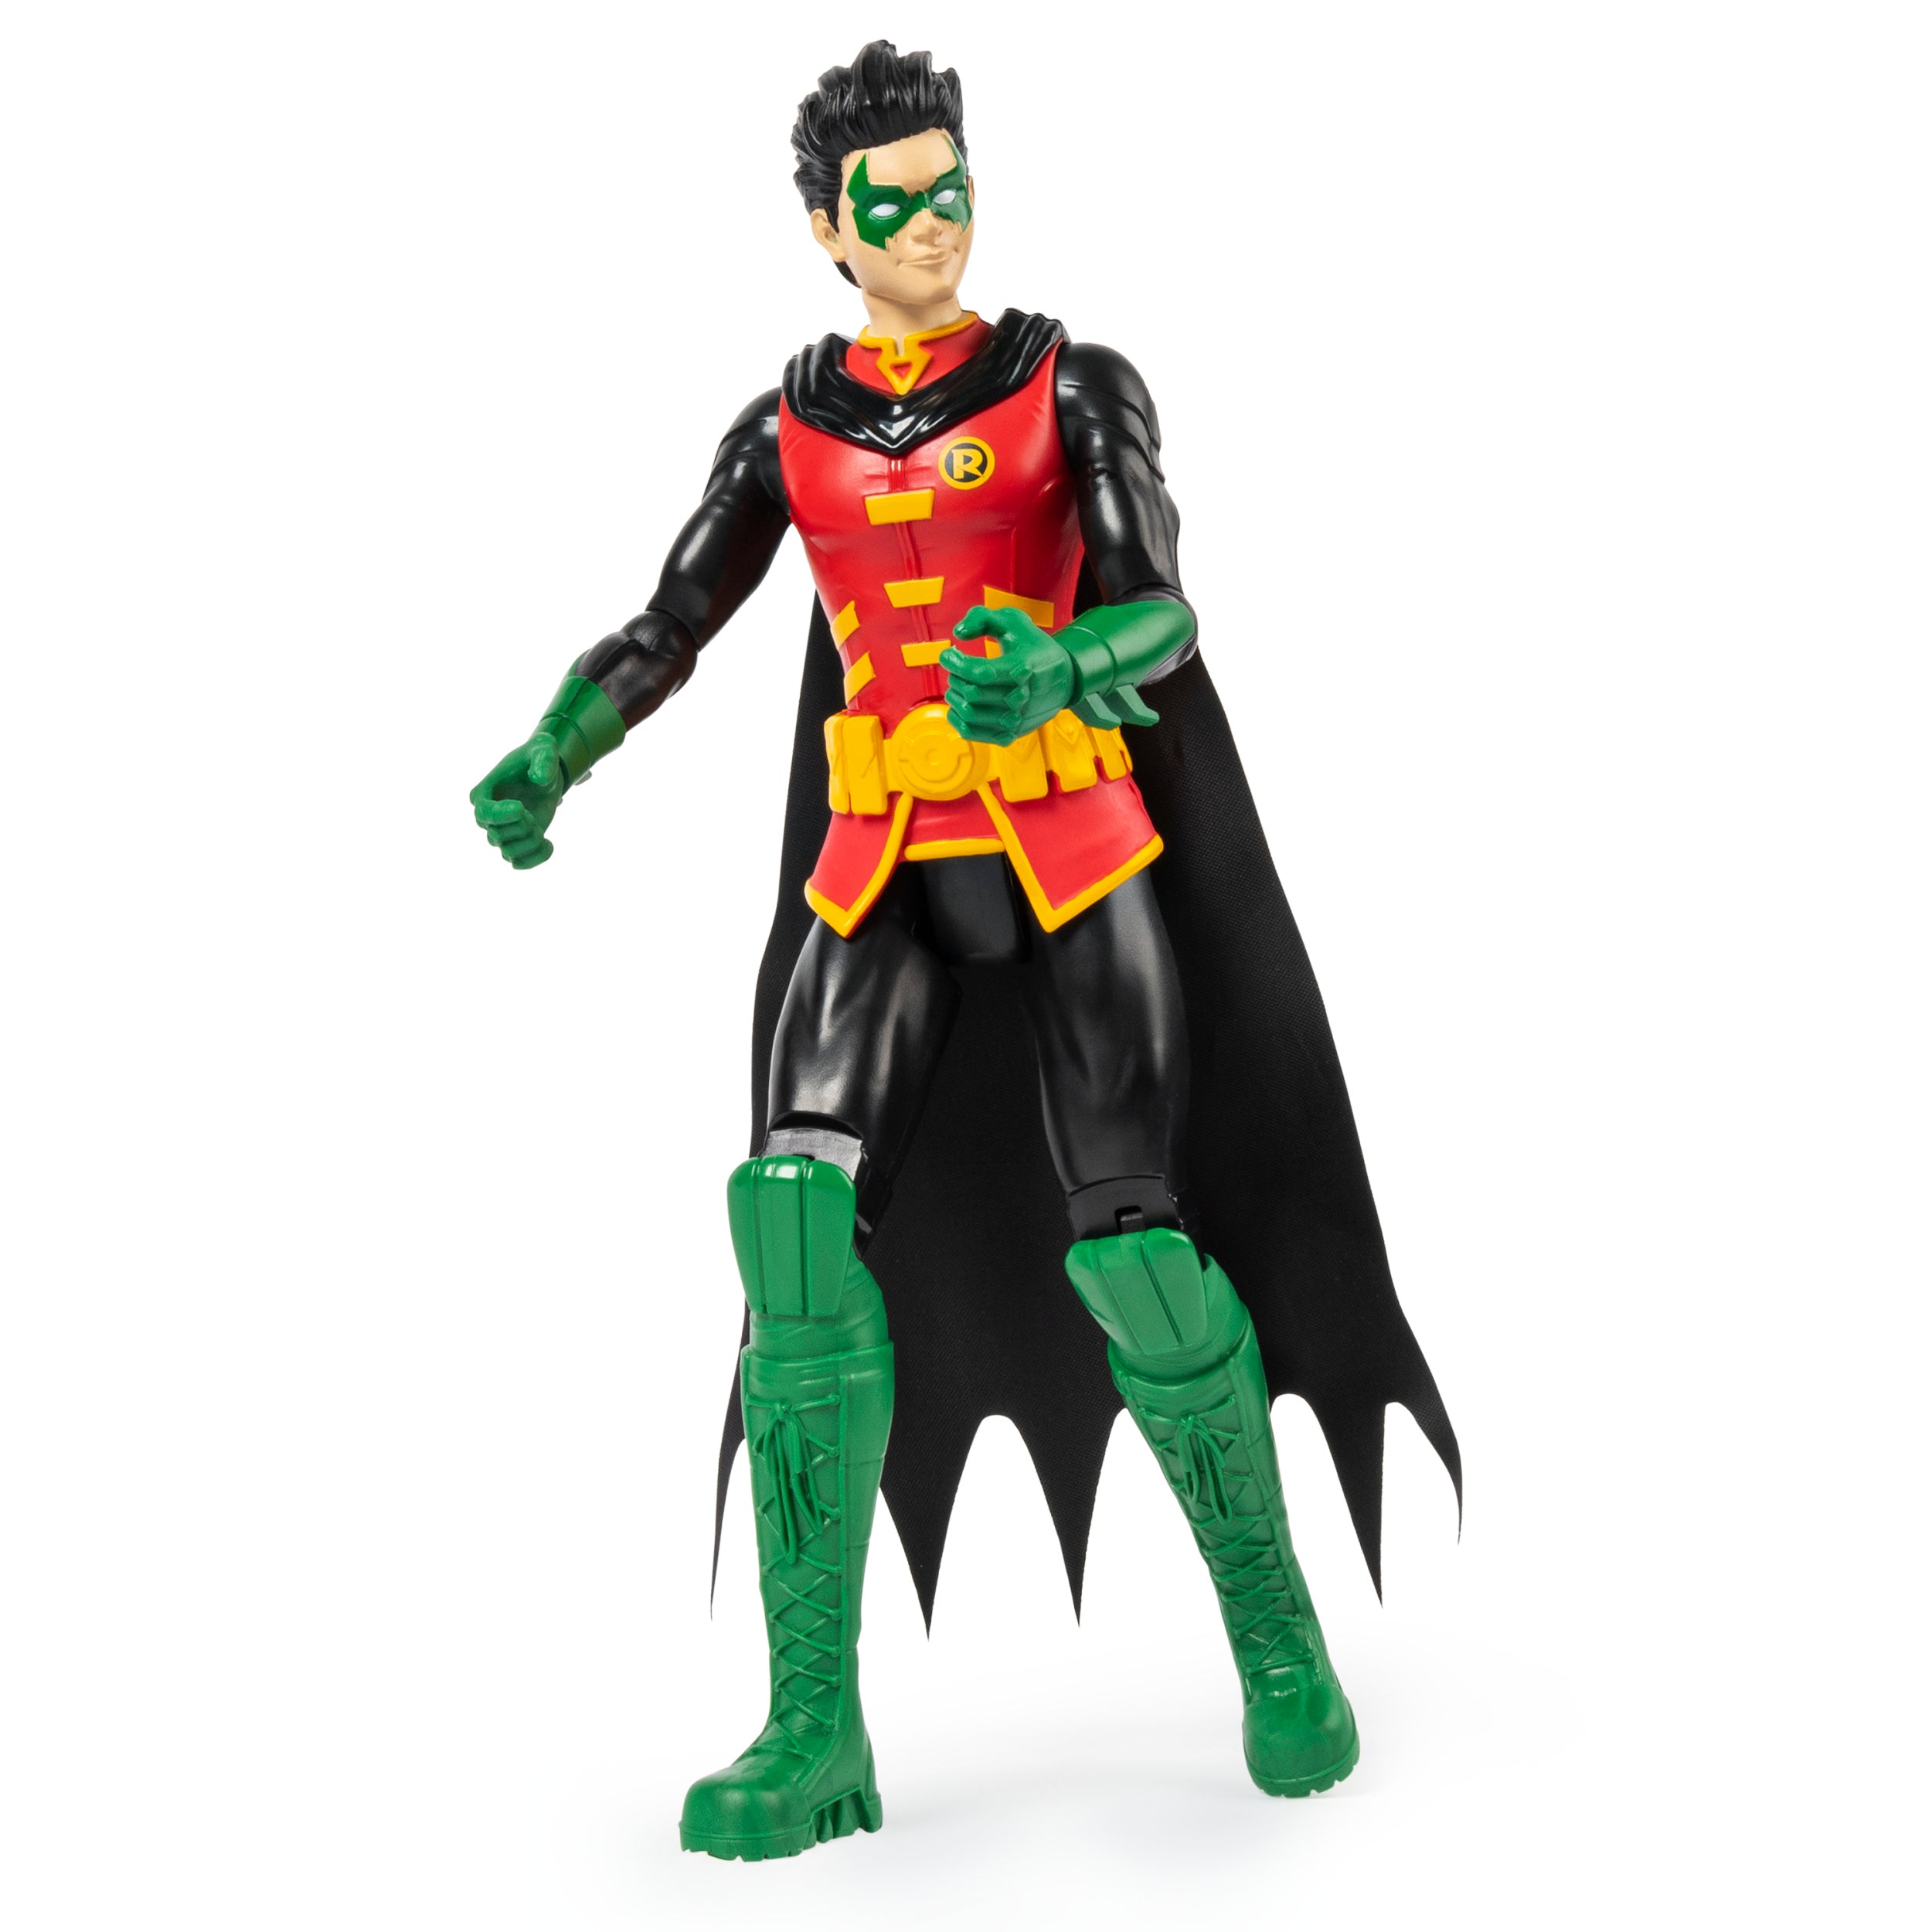 Batman: Robin Figura De Accion 12 Pulgadas